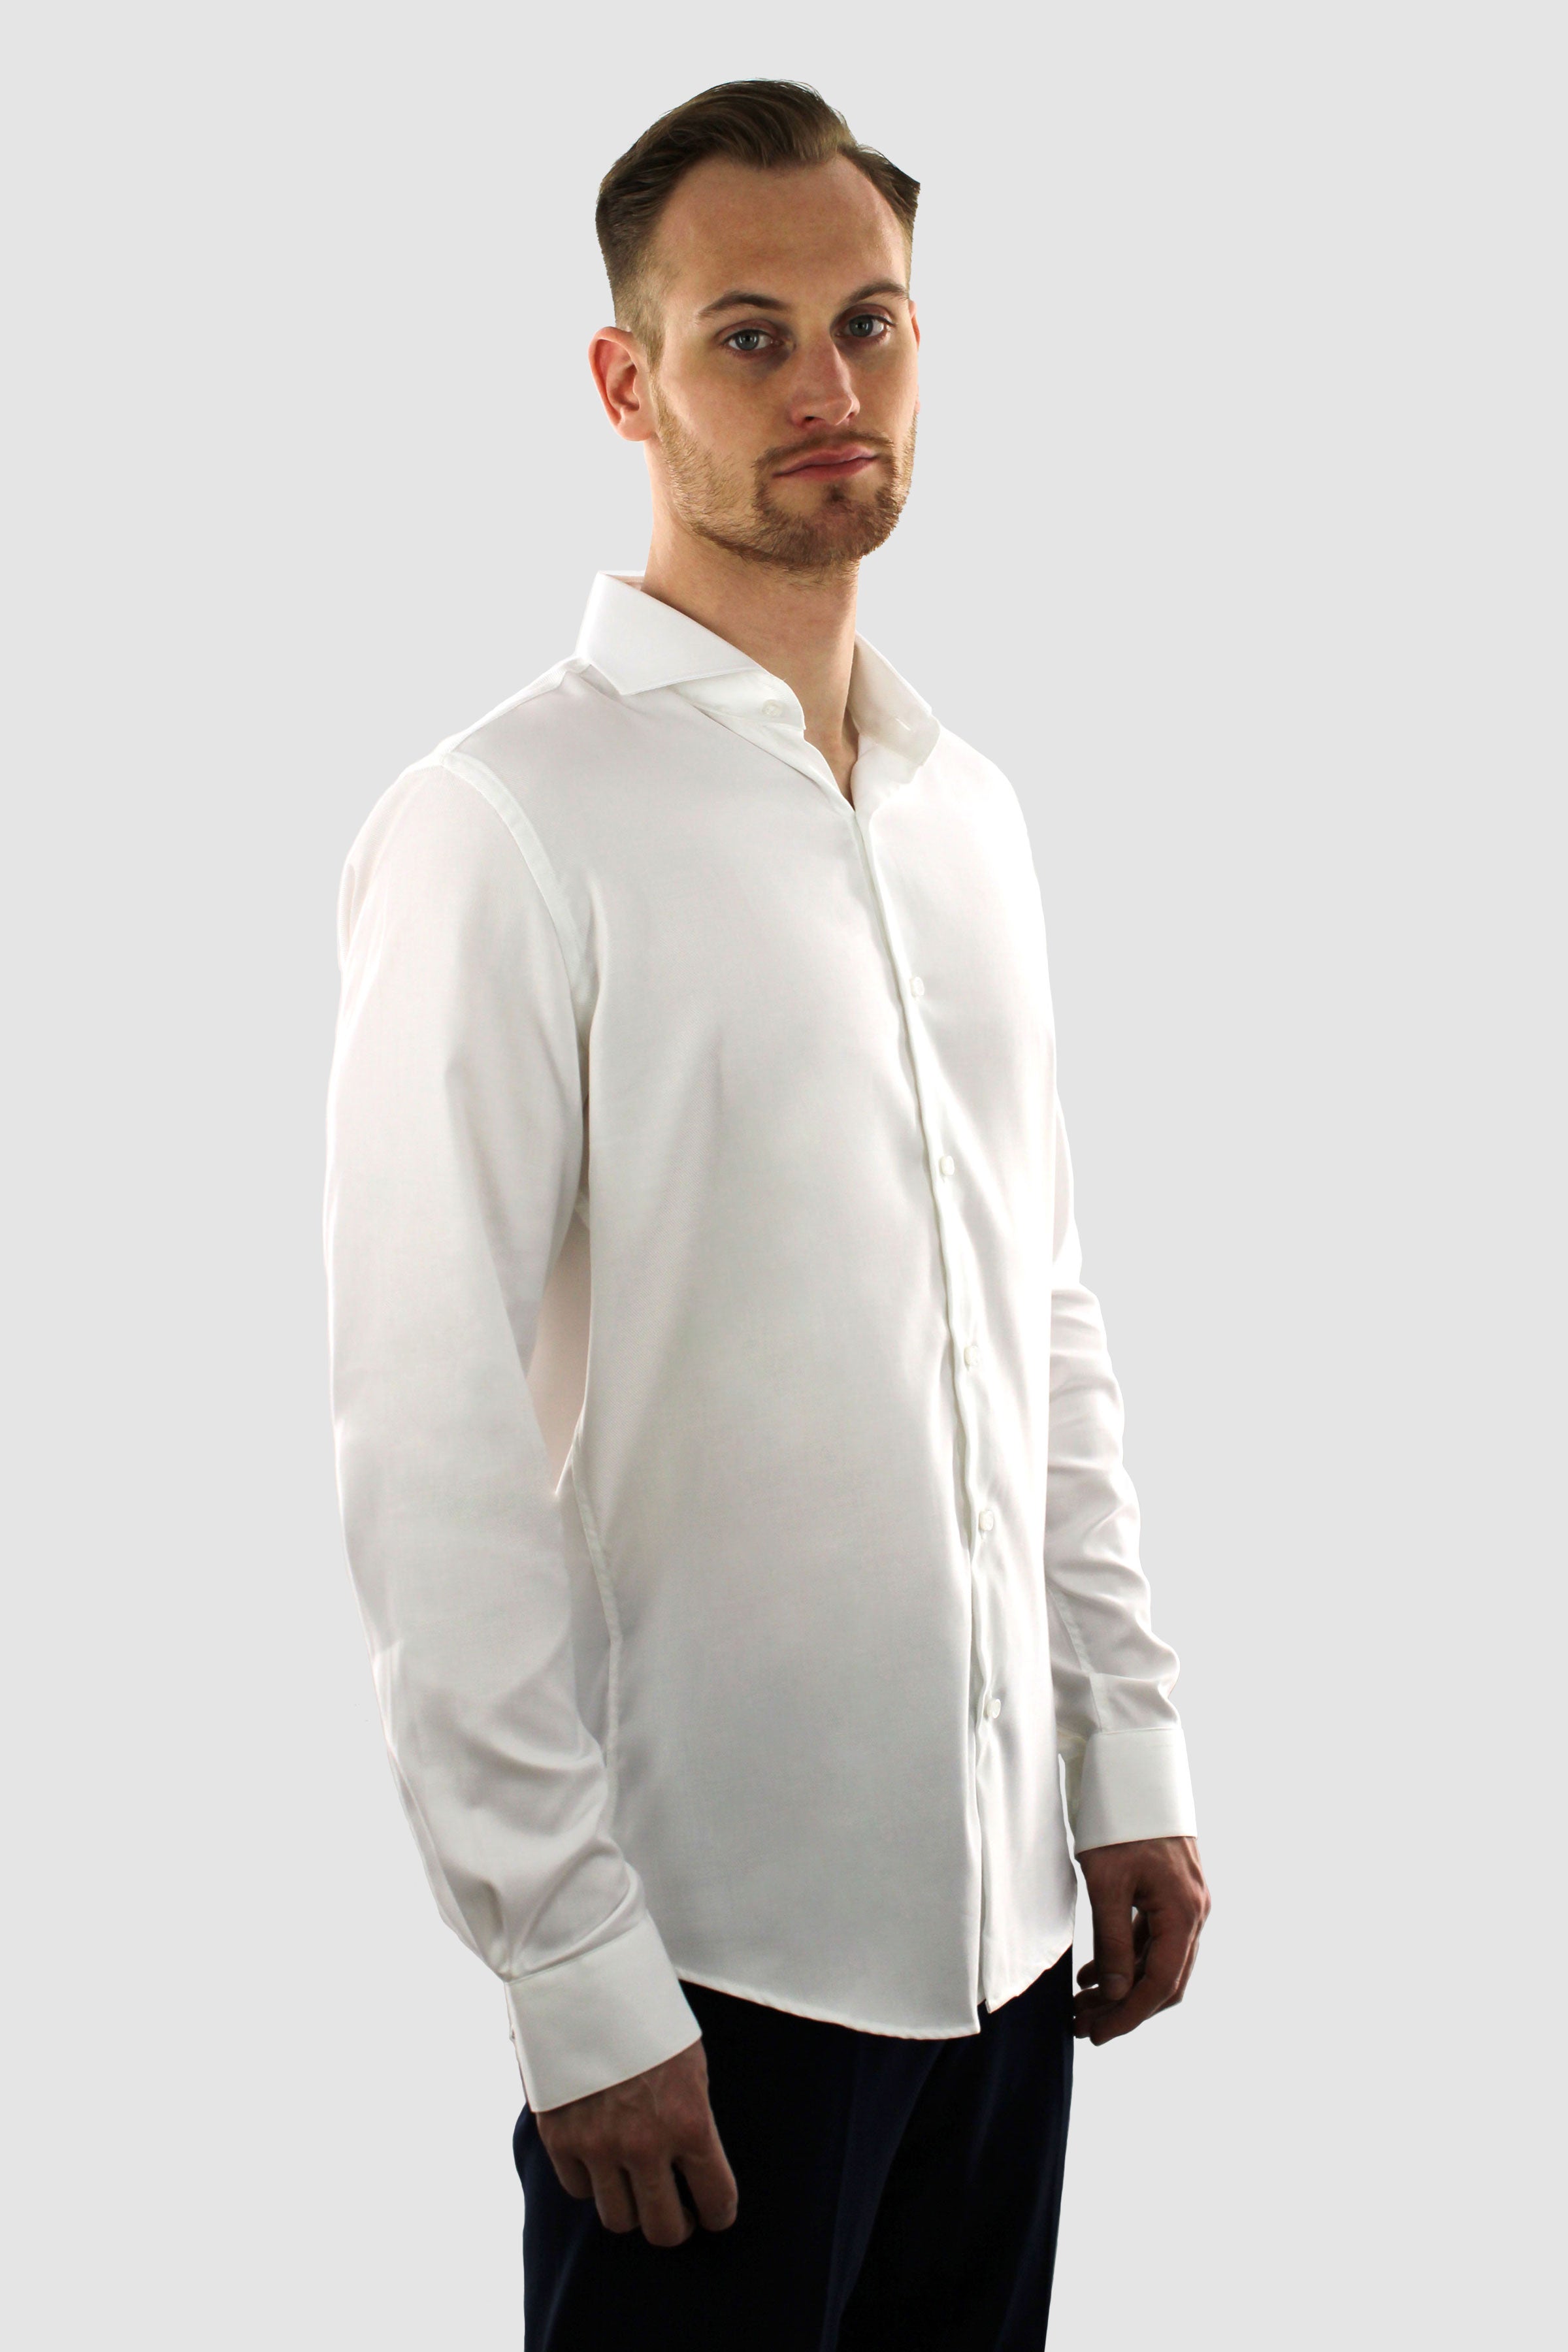 White Shirt - Twill Non Iron